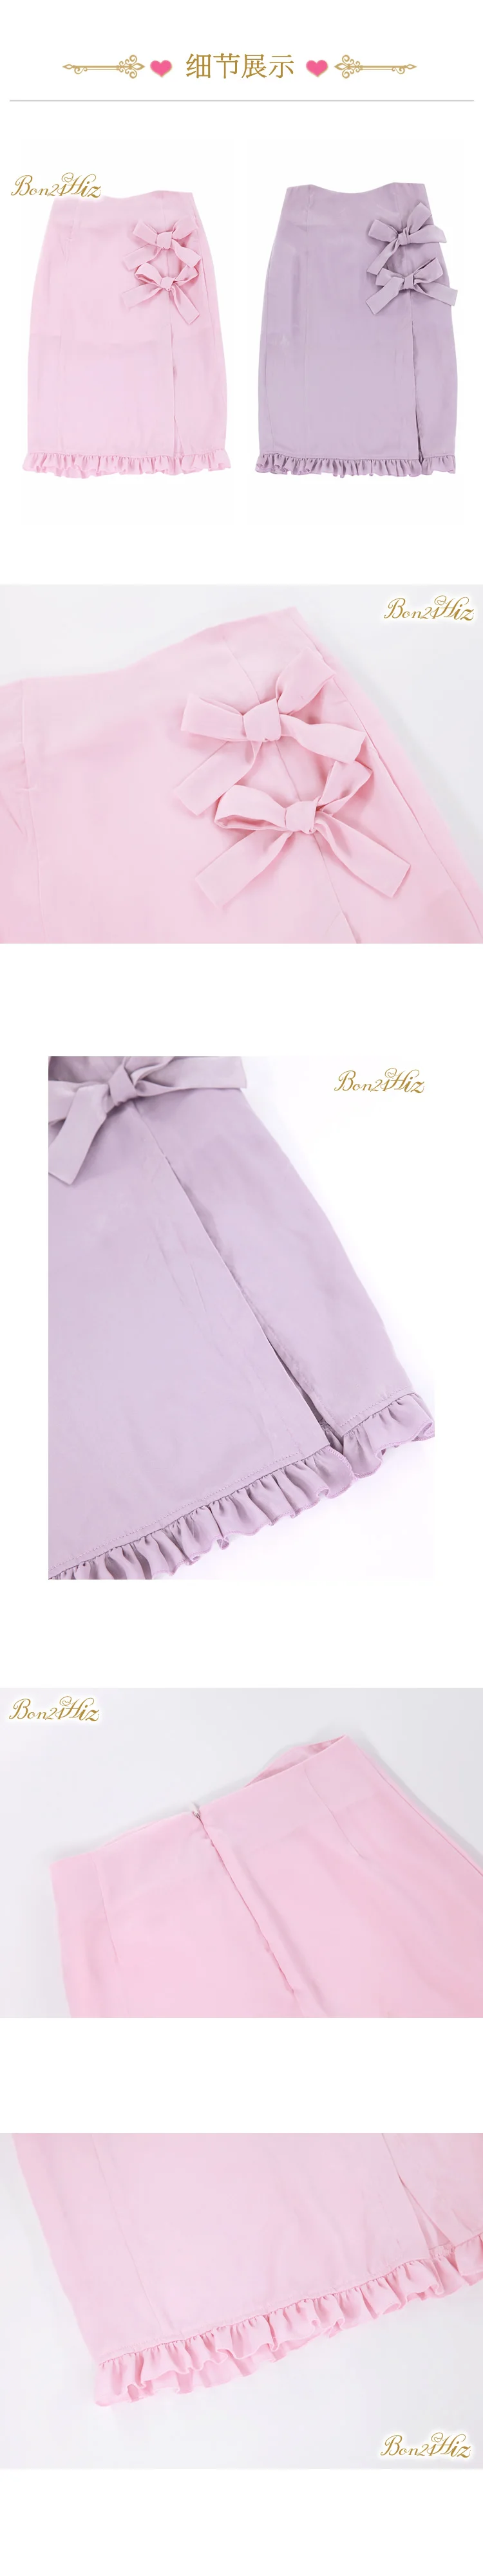 Принцесса сладкий Лолита Юбки Лето античный мягкий девушка мерсеризации высокого качества серый фиолетовый розовый лук моды vent юбка B1643